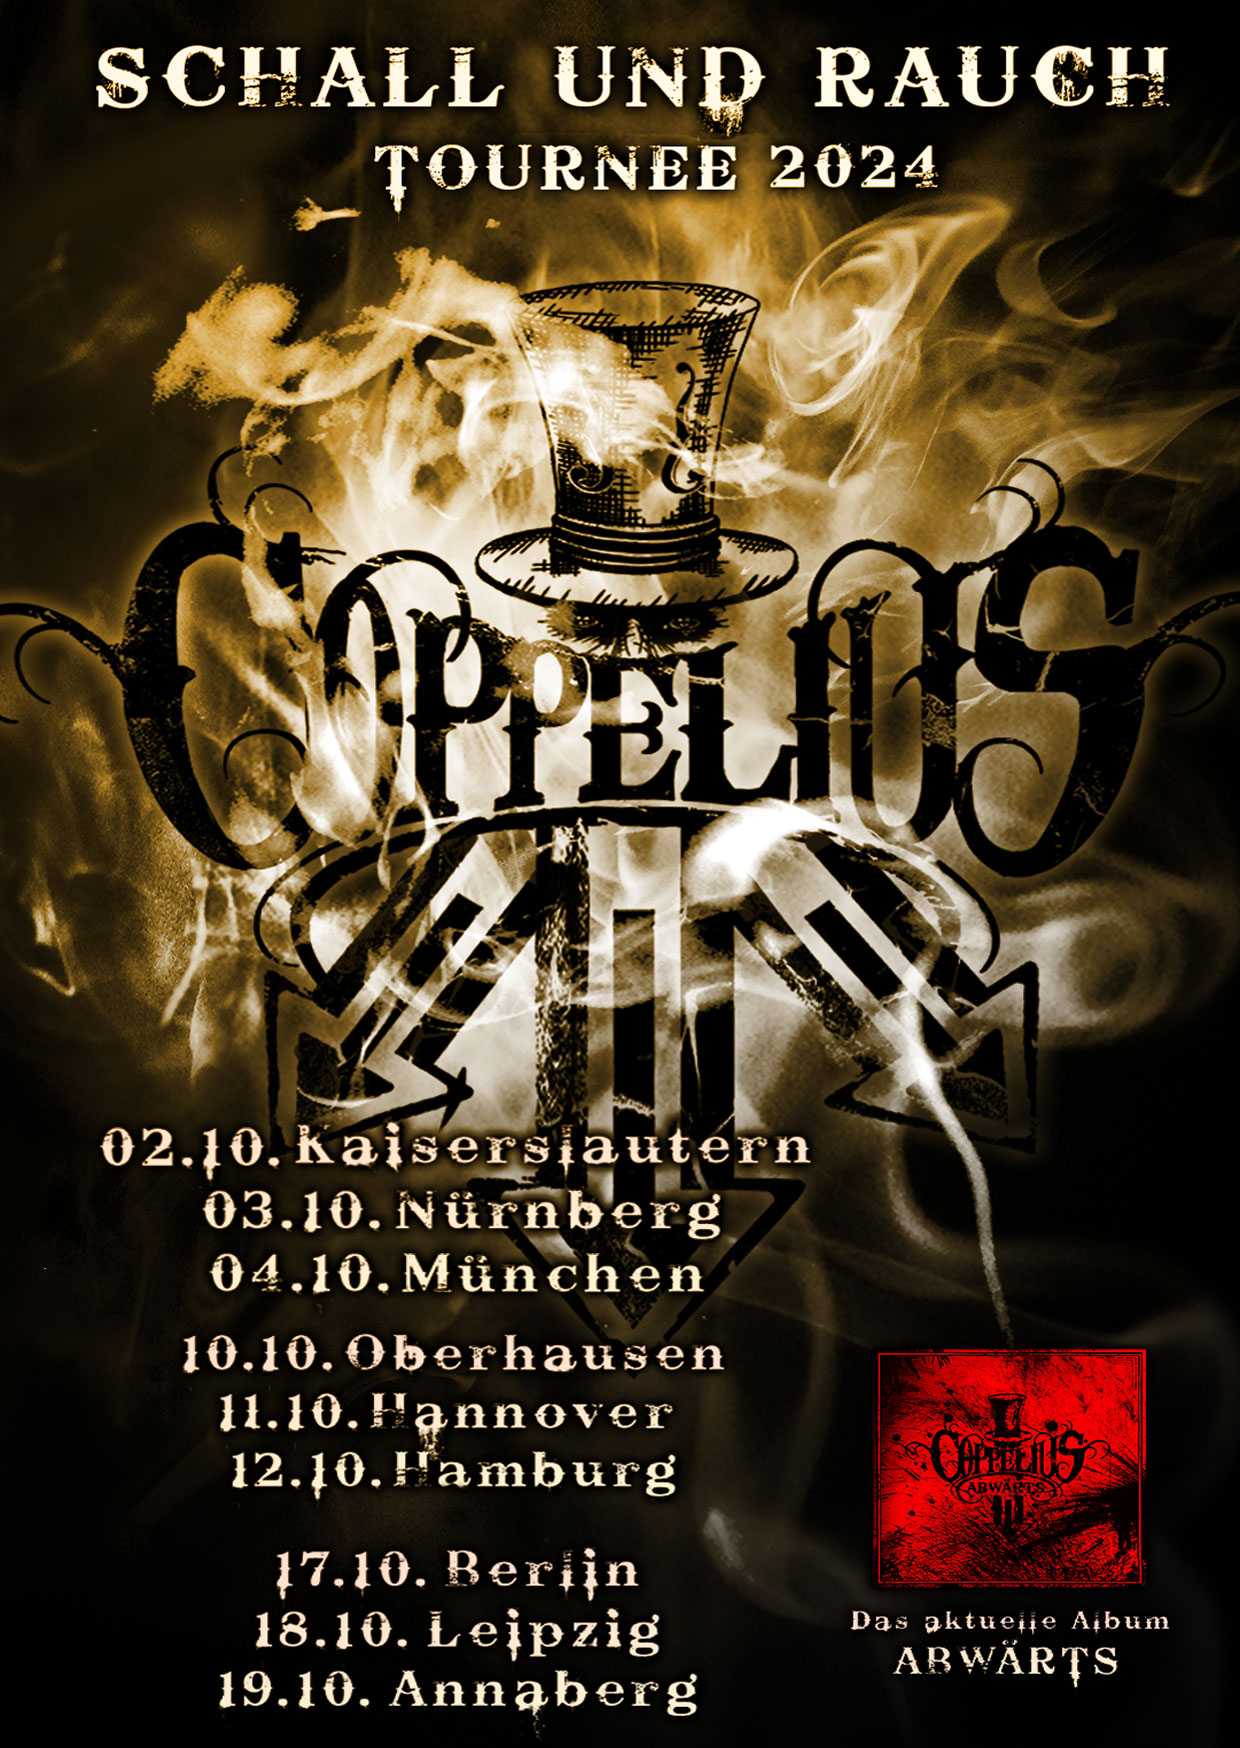 Coppelius - Schall Rauch Tournee 2024 at MusikZentrum Hannover Tickets